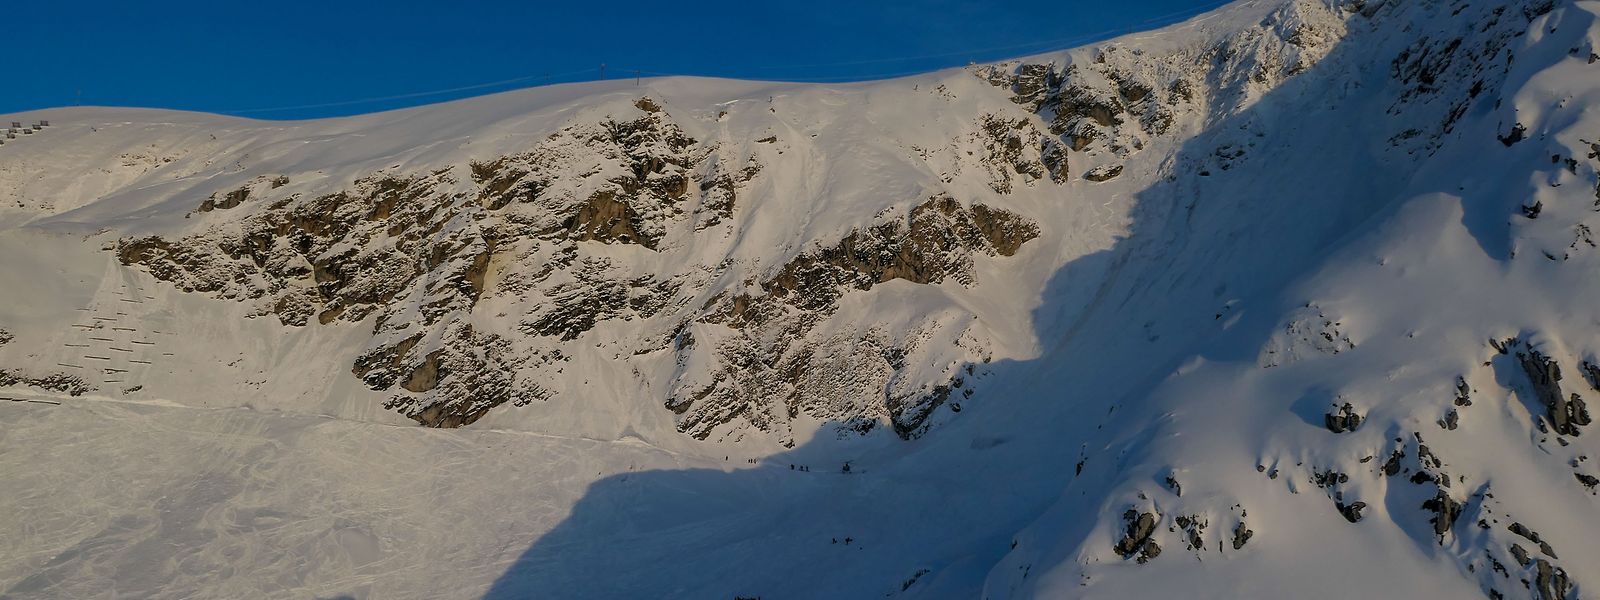 Eine Lawine hatte am Sonntagnachmittag am österreichischen Arlberg für Chaos gesorgt. Alle Vermissten konnten bisher gefunden werden.